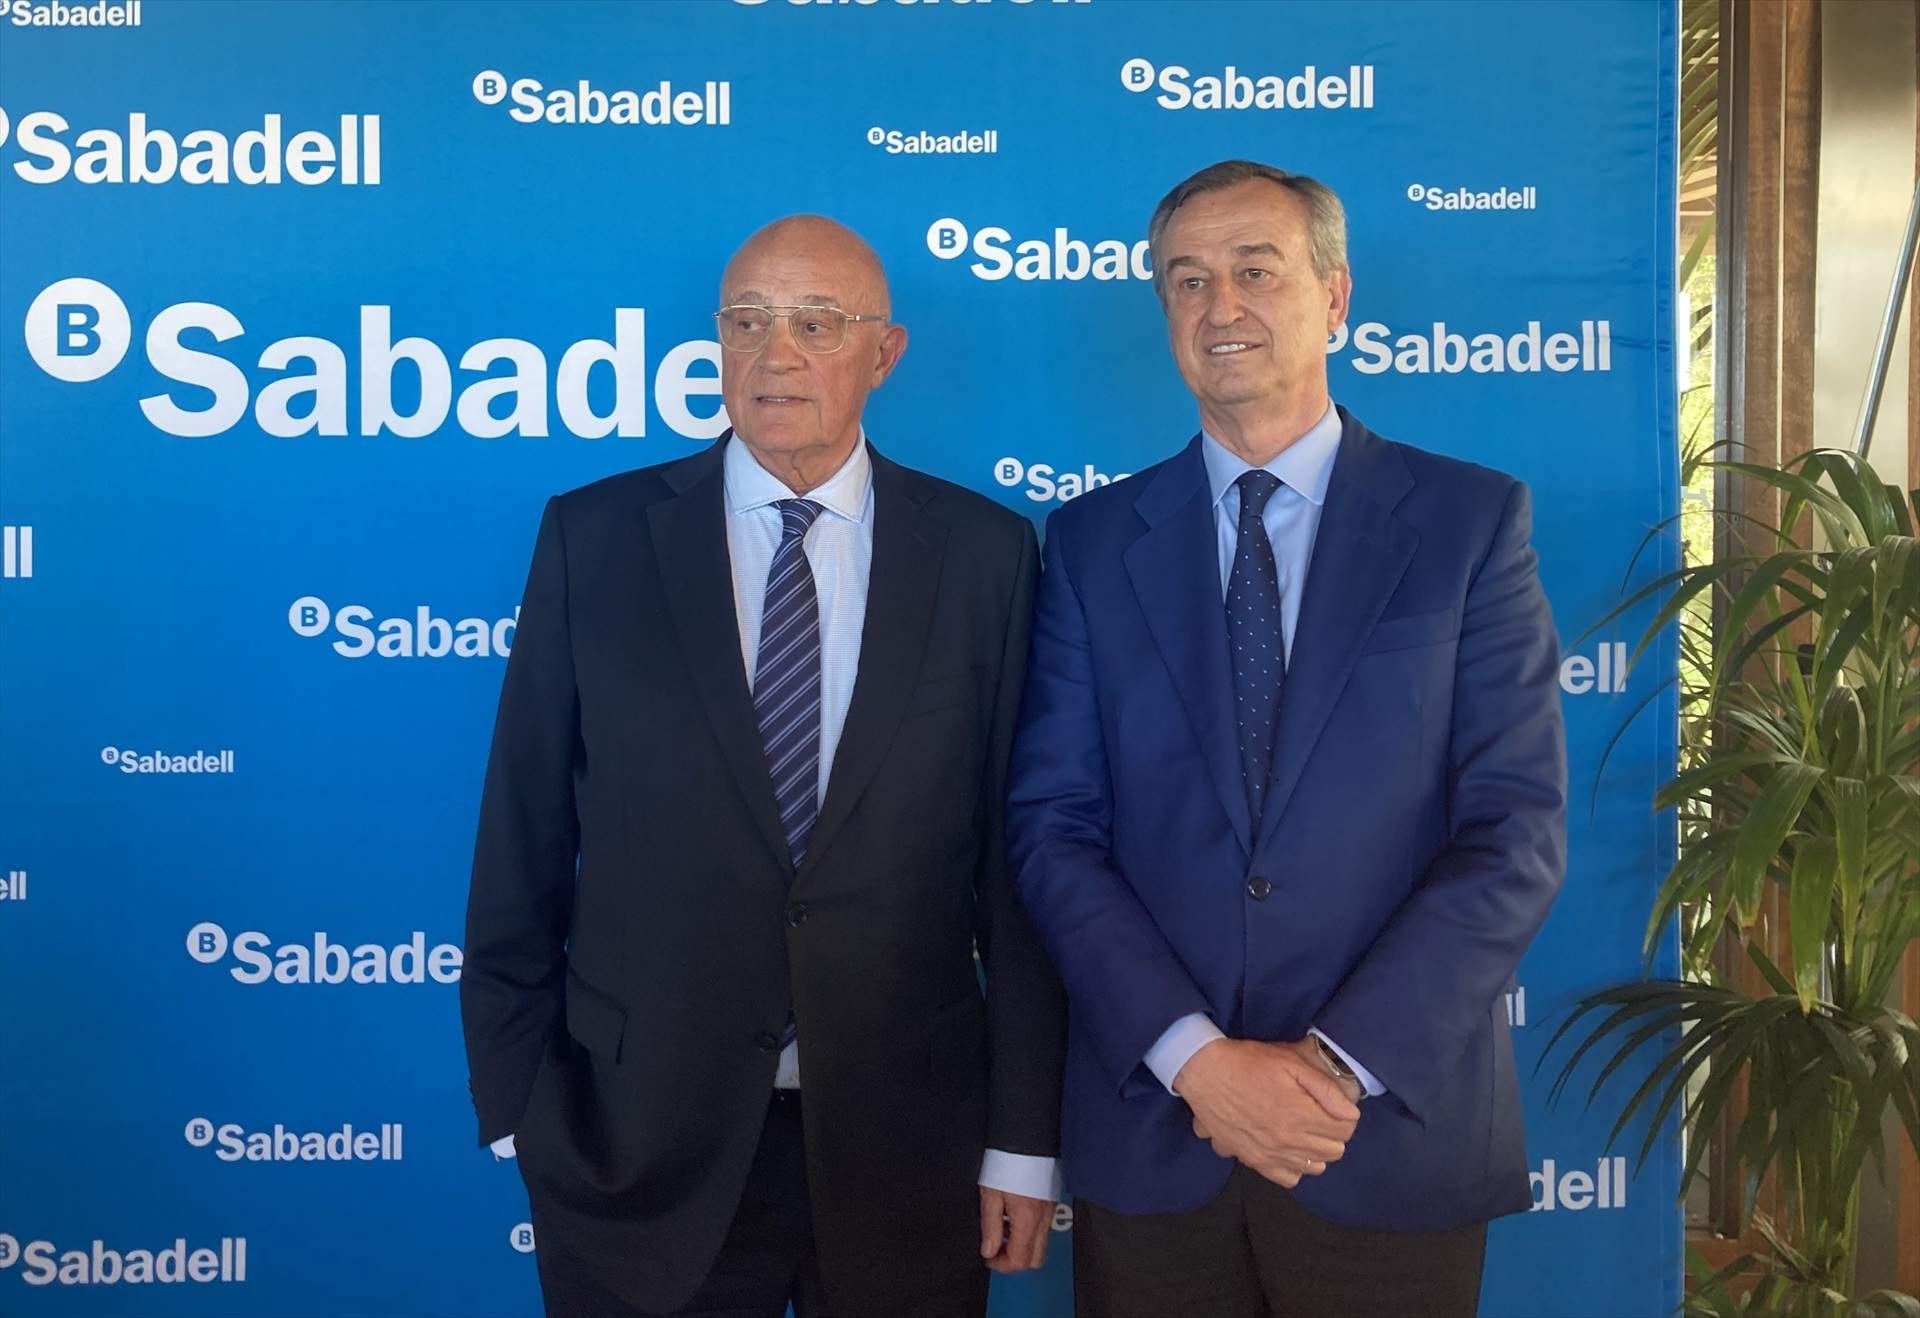 El Sabadell alerta que l'opa del BBVA l'exposa a perdre ocupació i oportunitats de negoci